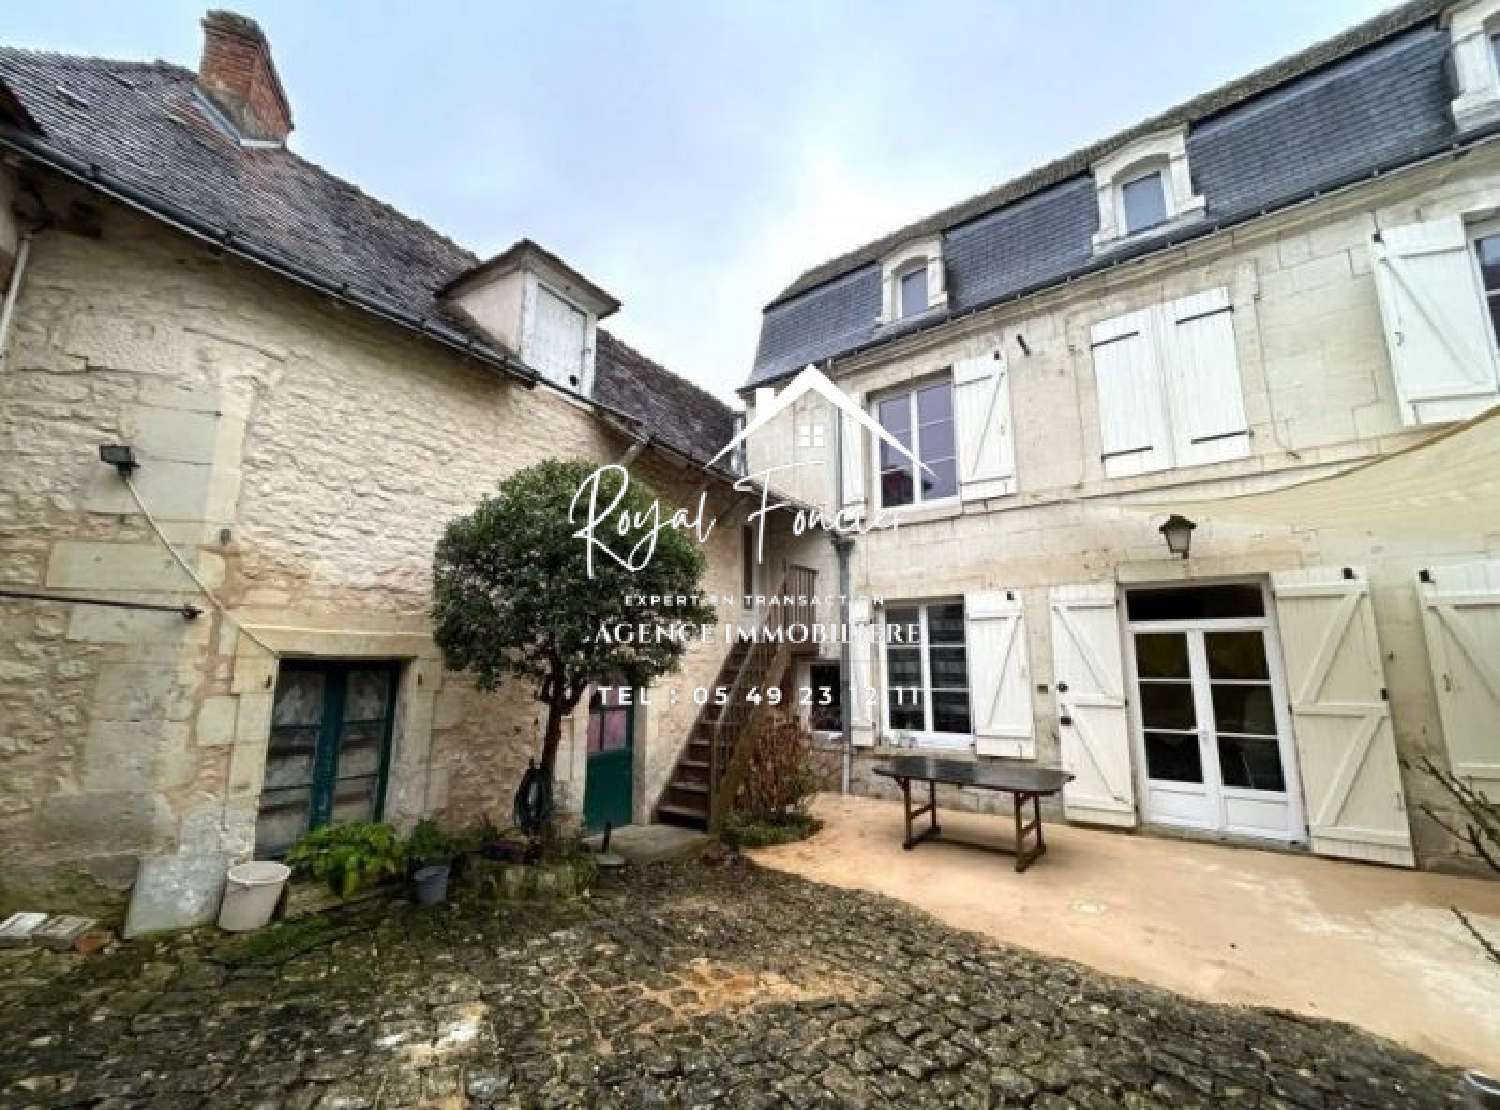  à vendre maison Preuilly-sur-Claise Indre-et-Loire 2